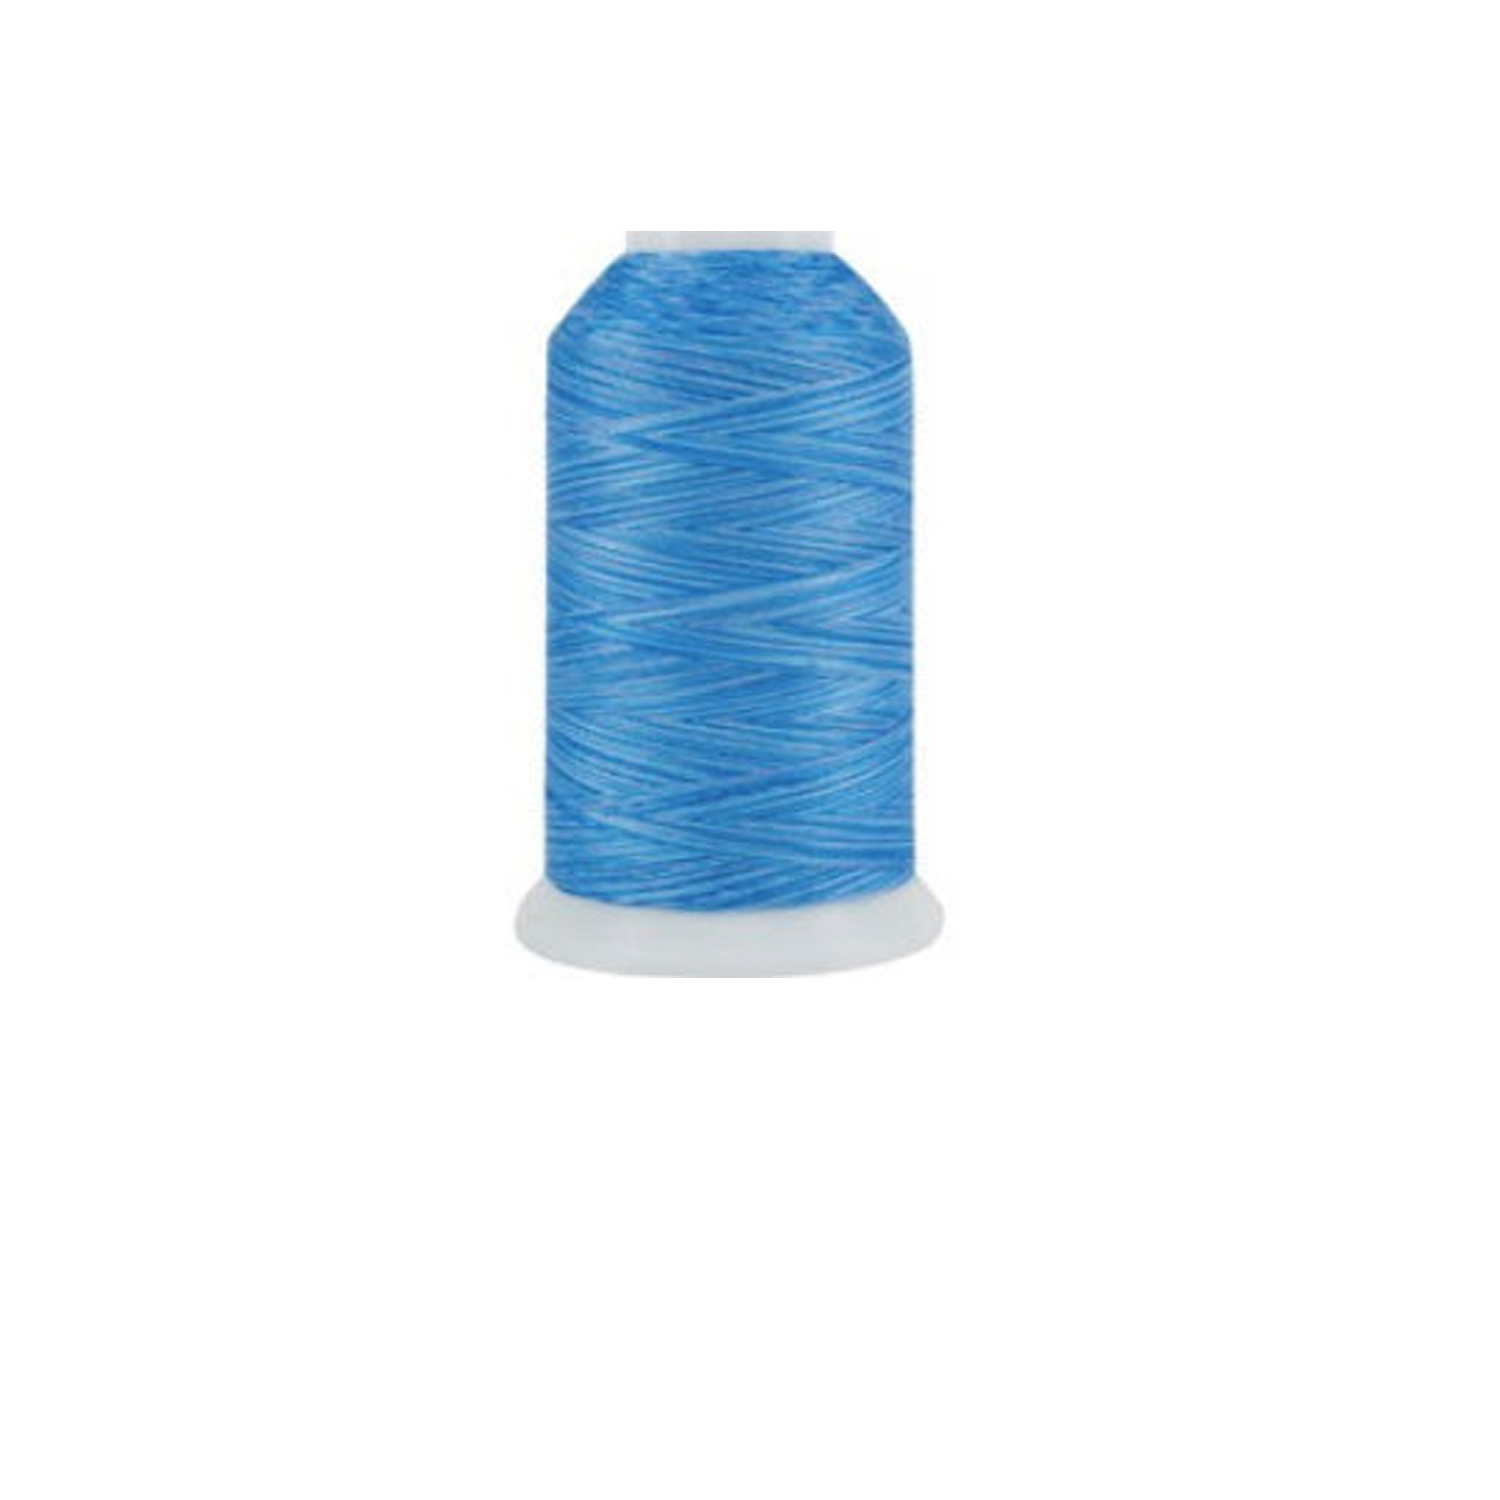 Thread Aqua Blue mH573